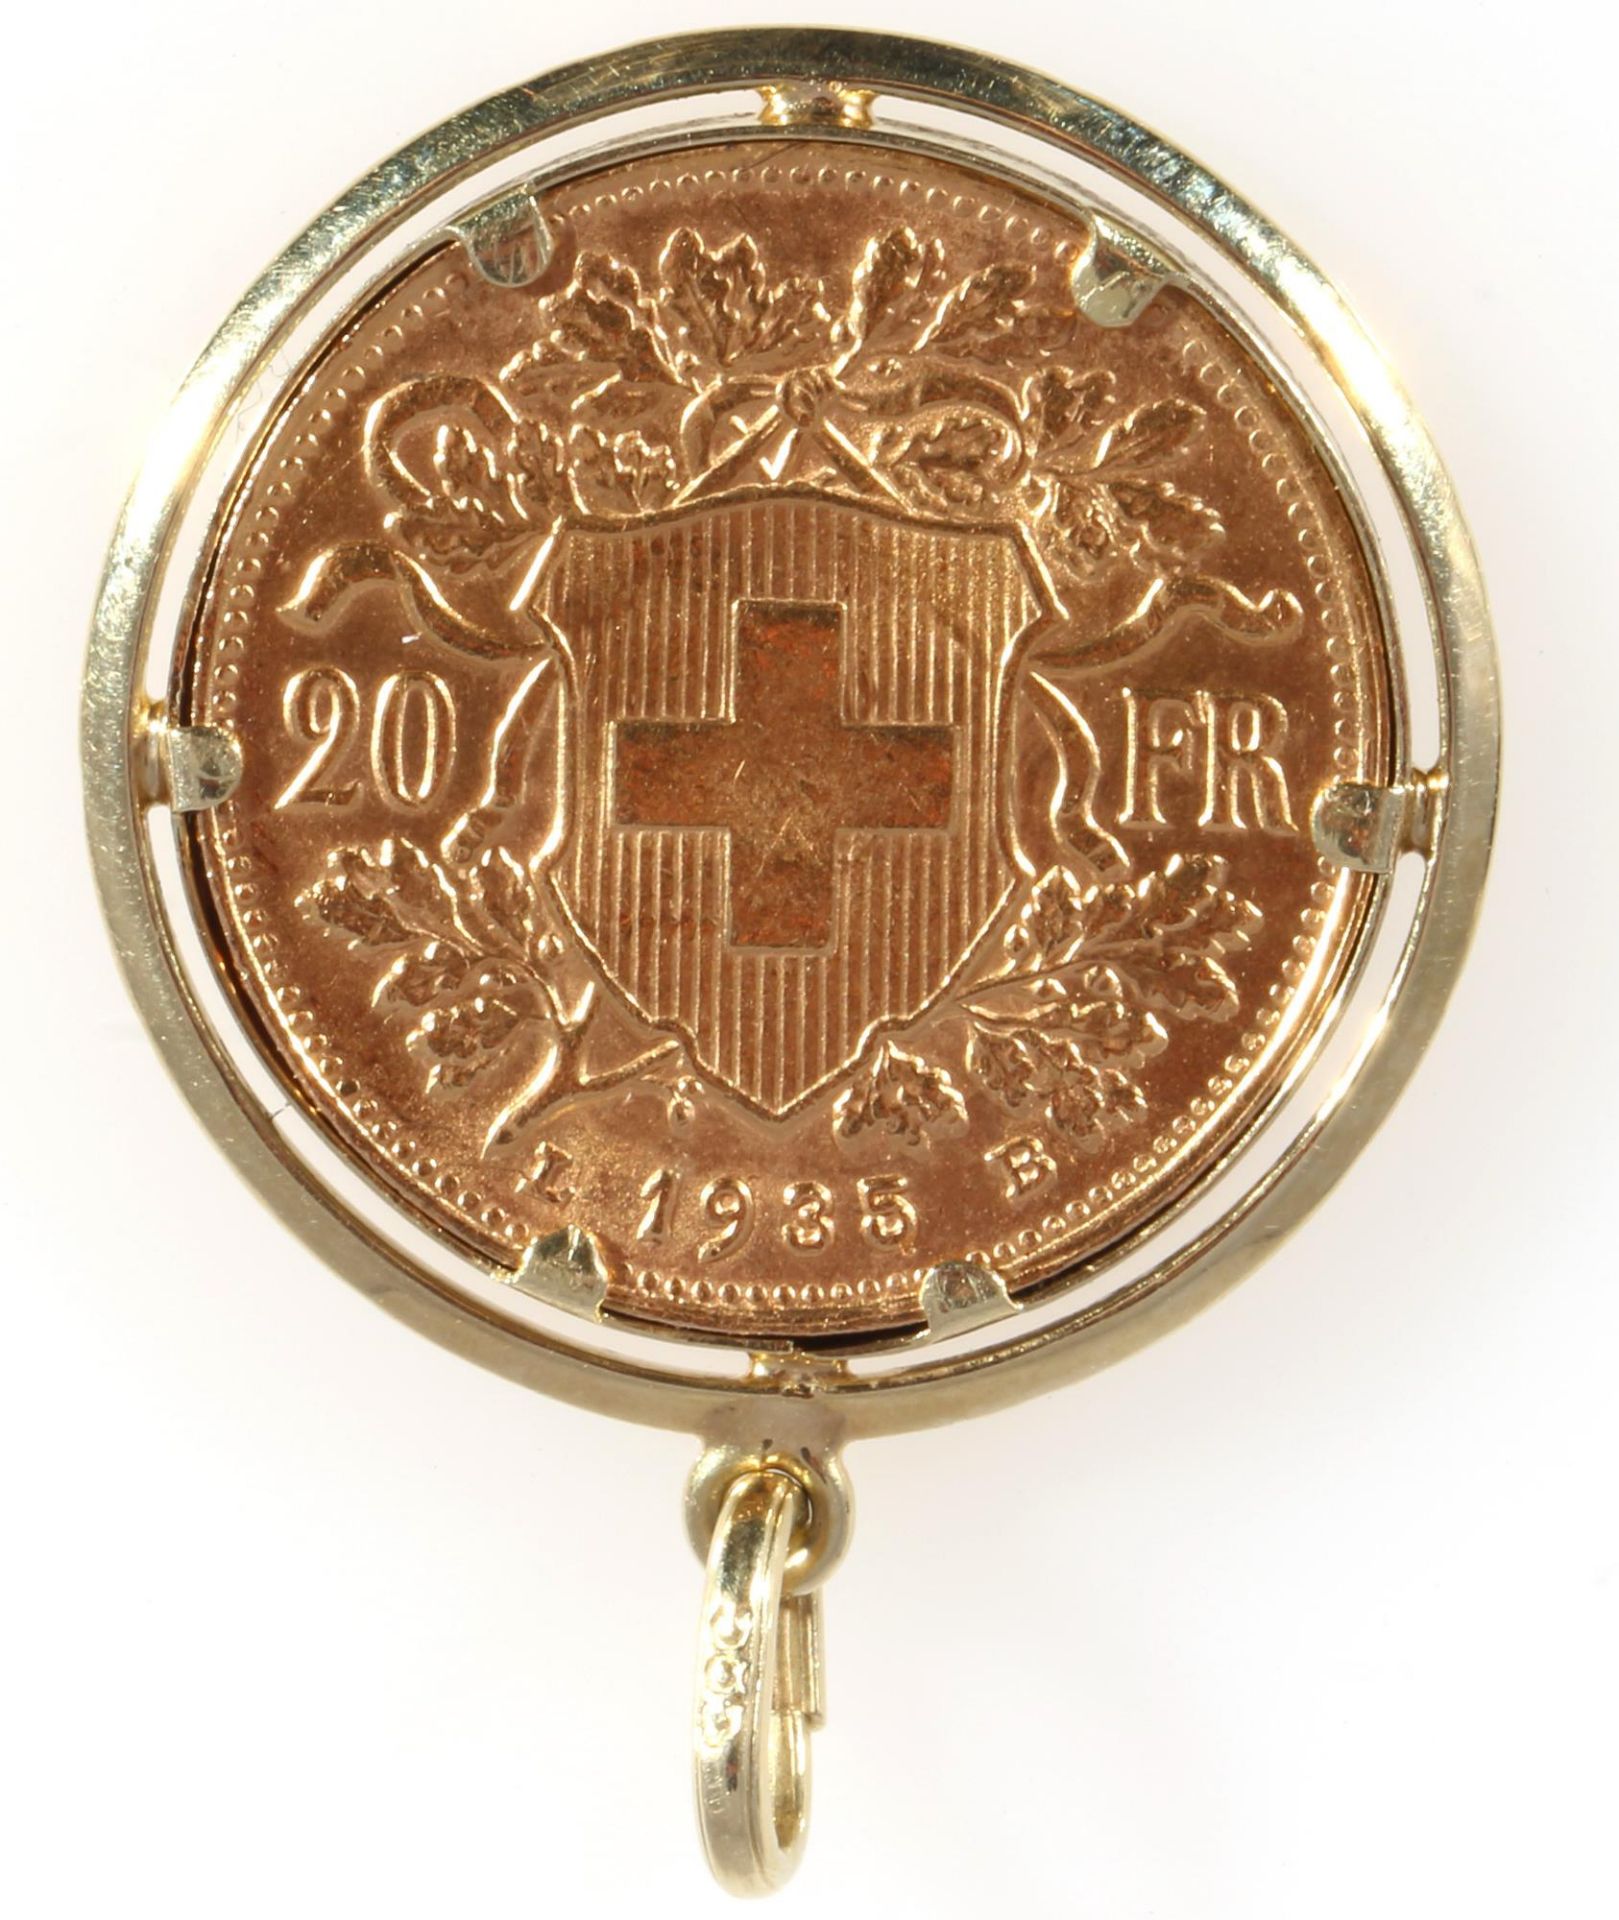 Goldmünze 20 Franken Schweiz Helvetia 1935 B, Gold coin 20 FR Switzerland Helvetia 1935 B, - Image 2 of 2